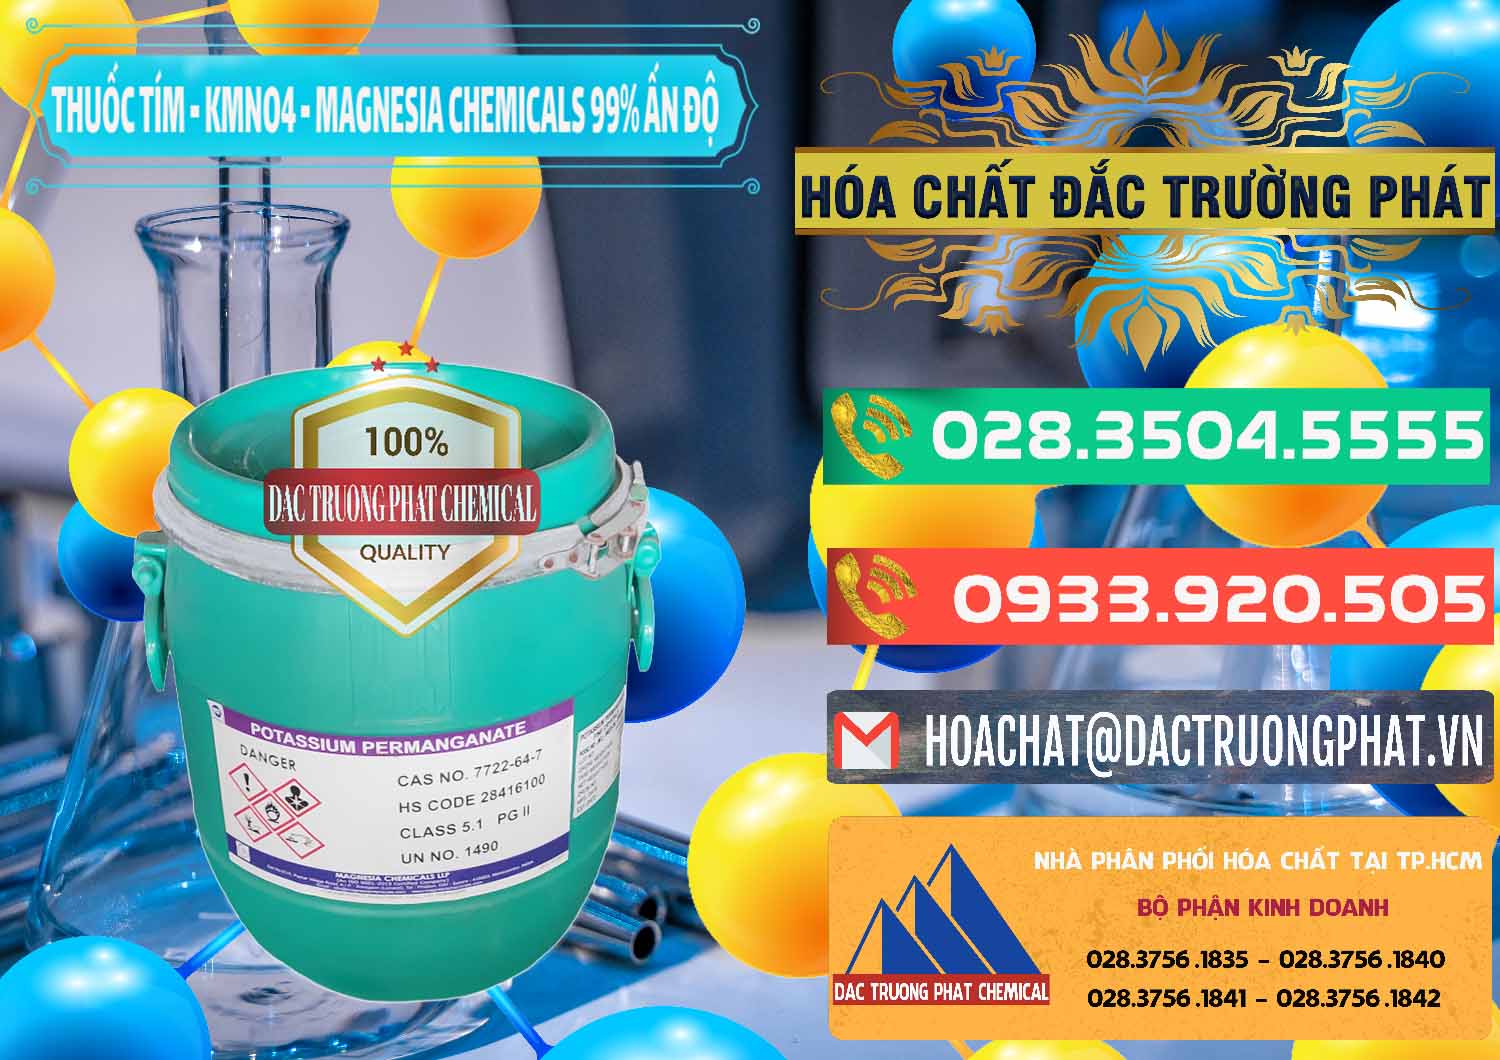 Đơn vị chuyên bán & cung cấp Thuốc Tím - KMNO4 Magnesia Chemicals 99% Ấn Độ India - 0251 - Nơi chuyên nhập khẩu - phân phối hóa chất tại TP.HCM - congtyhoachat.com.vn